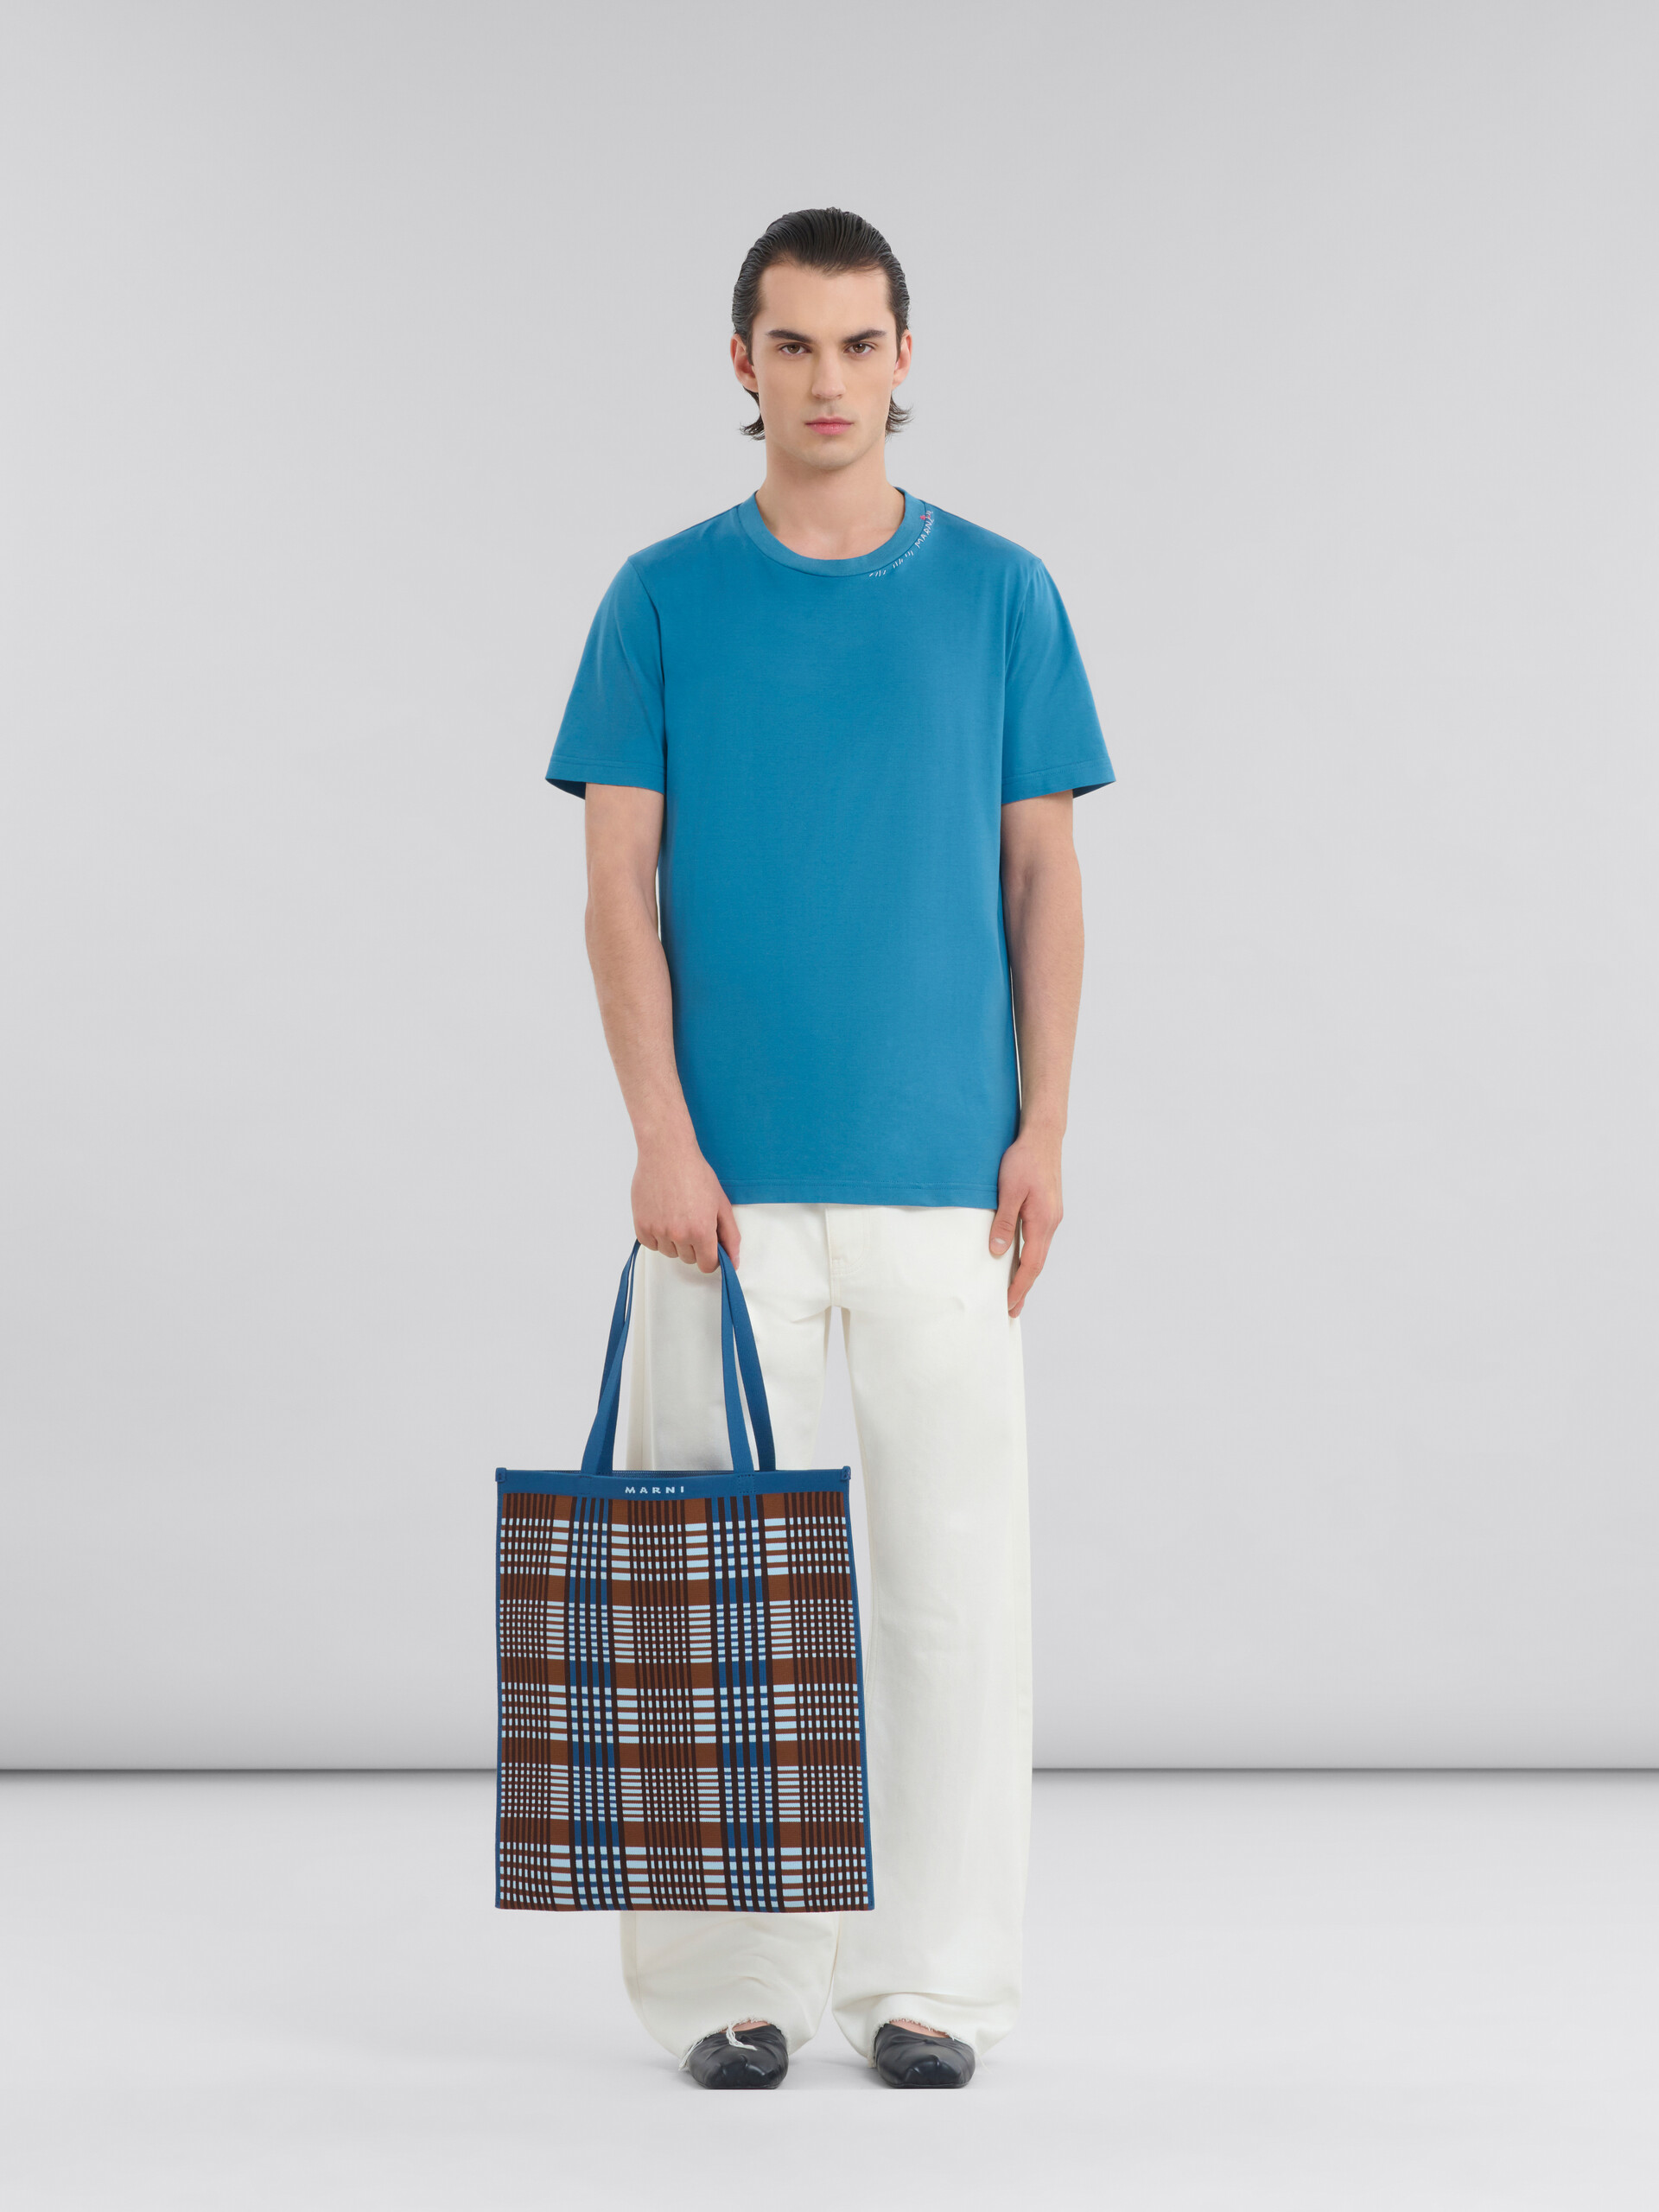 Blau-braun karierte, flache Tote Bag aus Jacquard - Shopper - Image 2